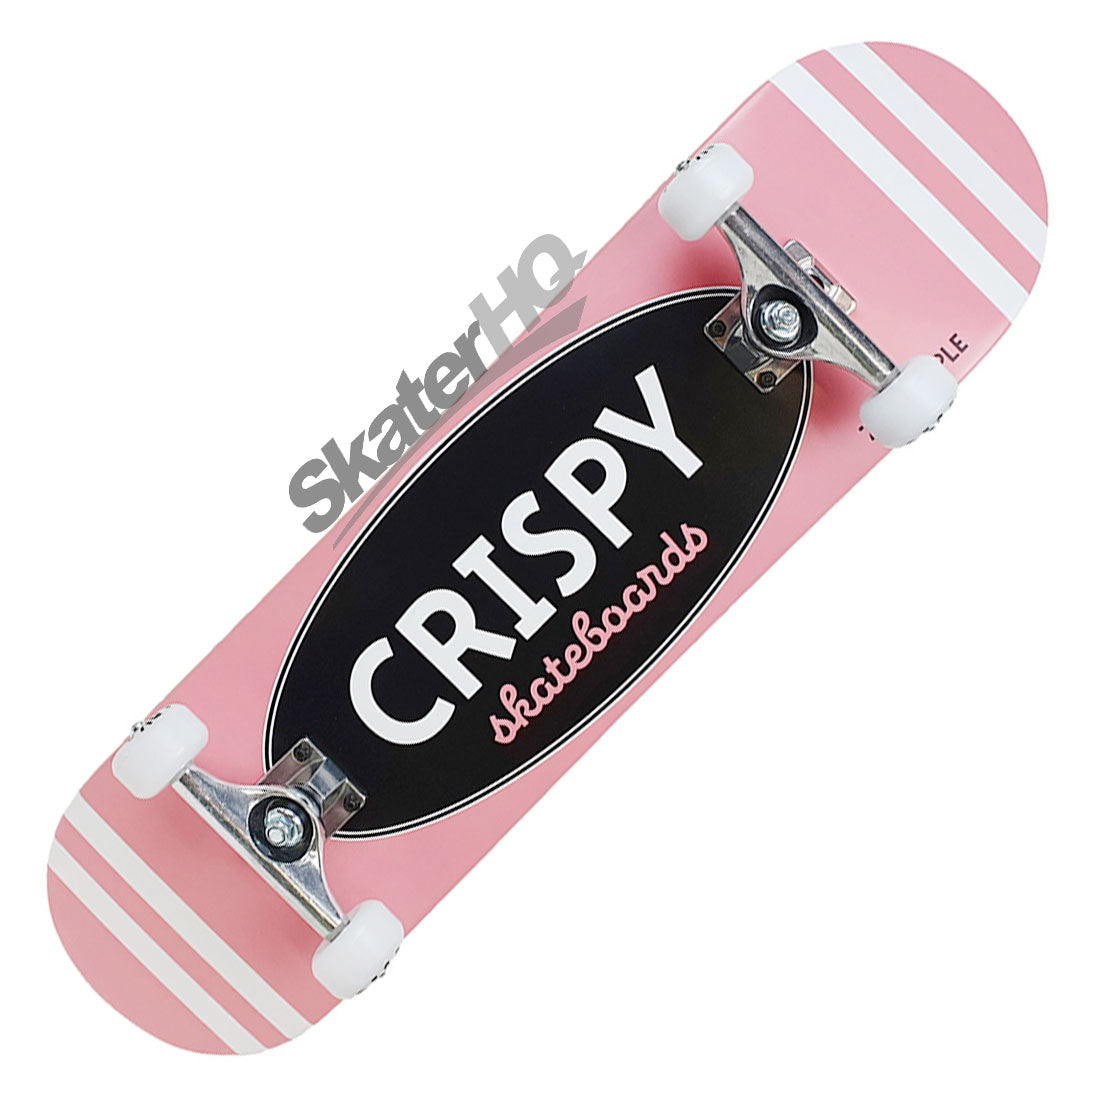 Crispy Rookie Stripes 8.0 Complete - Pink Skateboard Completes Modern Street